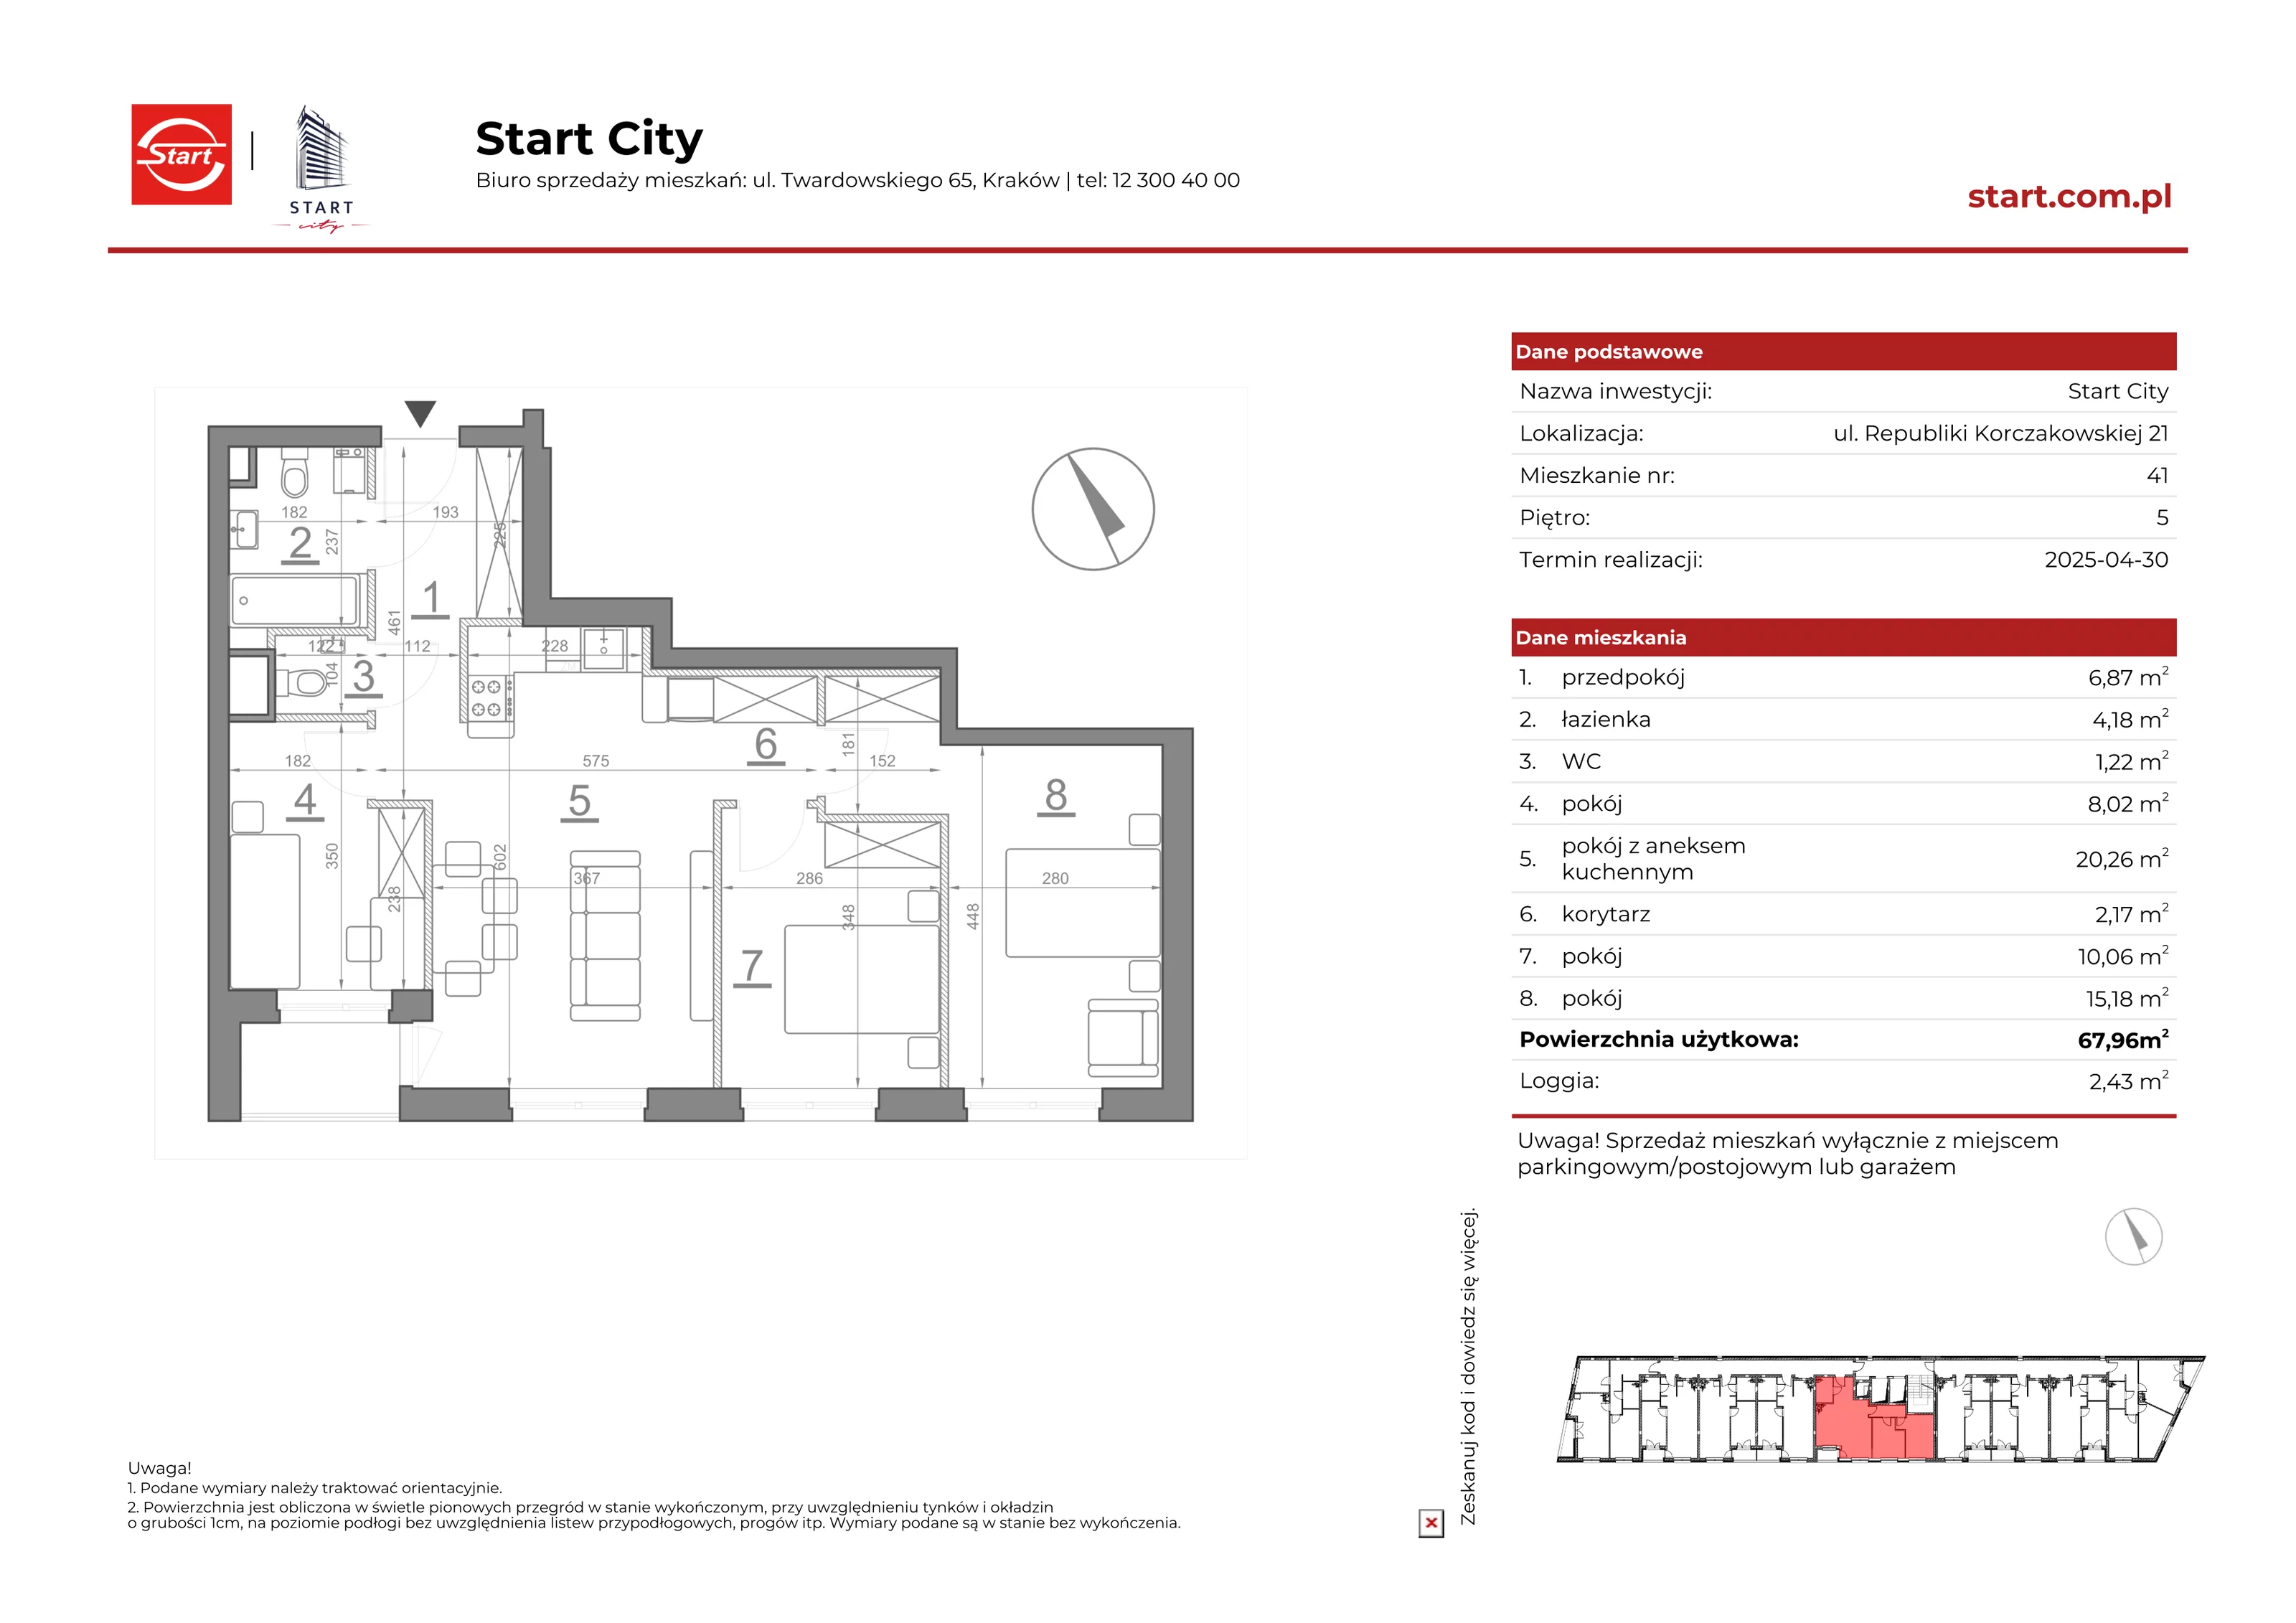 Mieszkanie 67,96 m², piętro 5, oferta nr 21/41, Start City, Kraków, Bieżanów-Prokocim, ul. Republiki Korczakowskiej 21